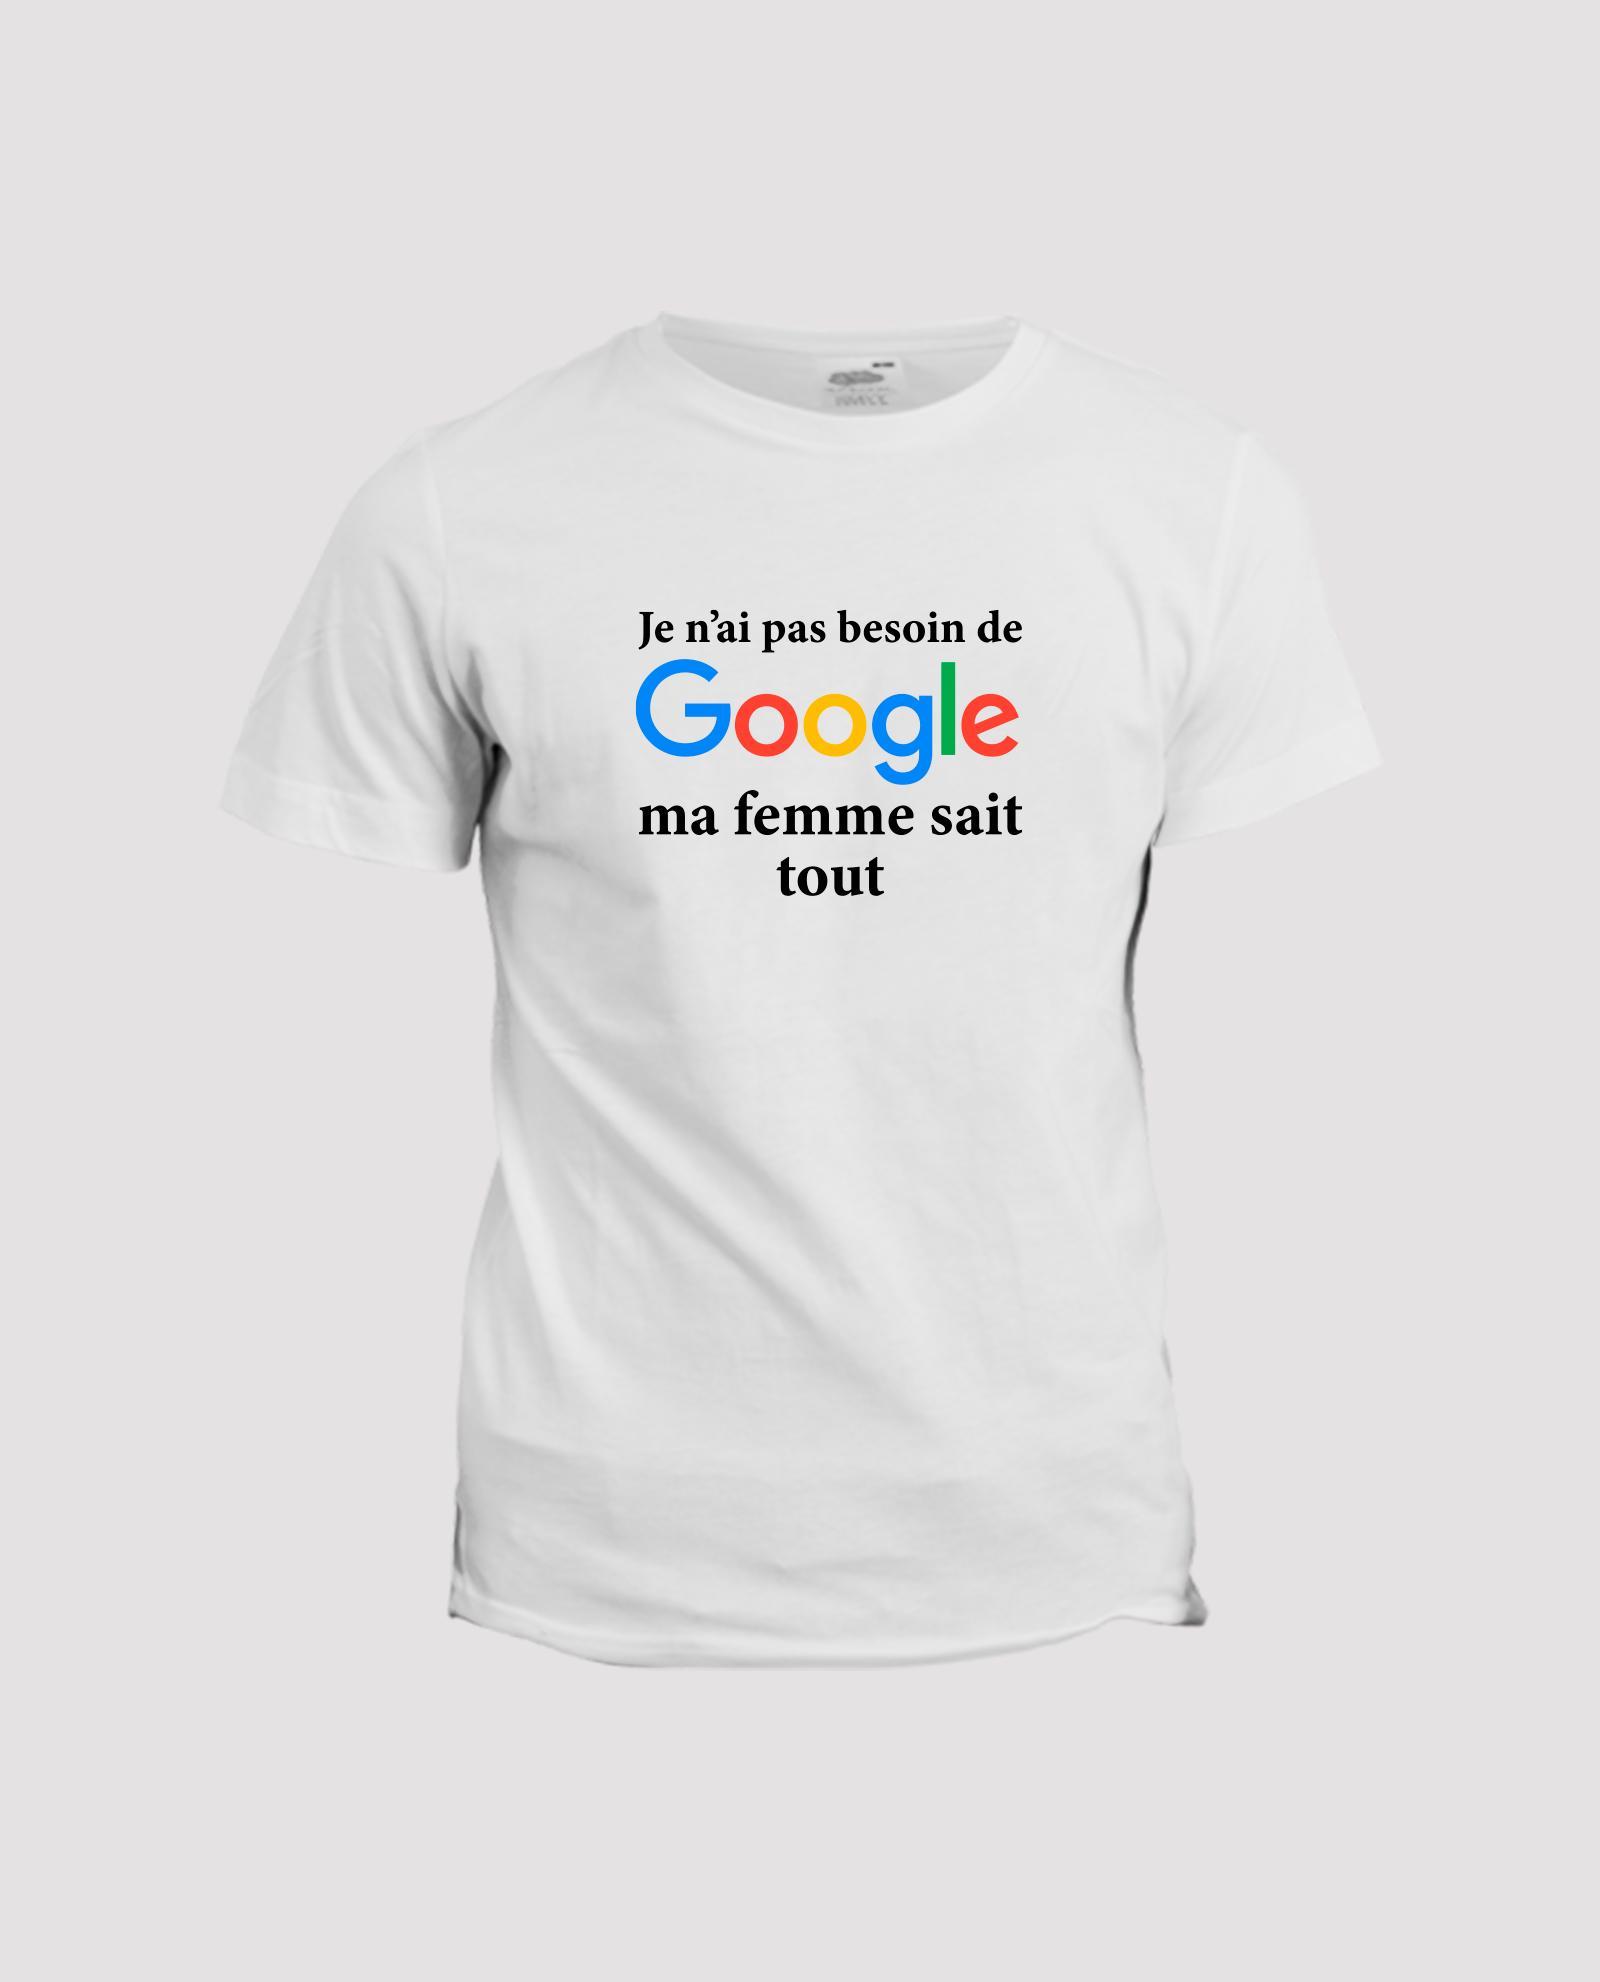 T-shirt humour : Je n’ai pas besoin de Google ma femme sait tout.